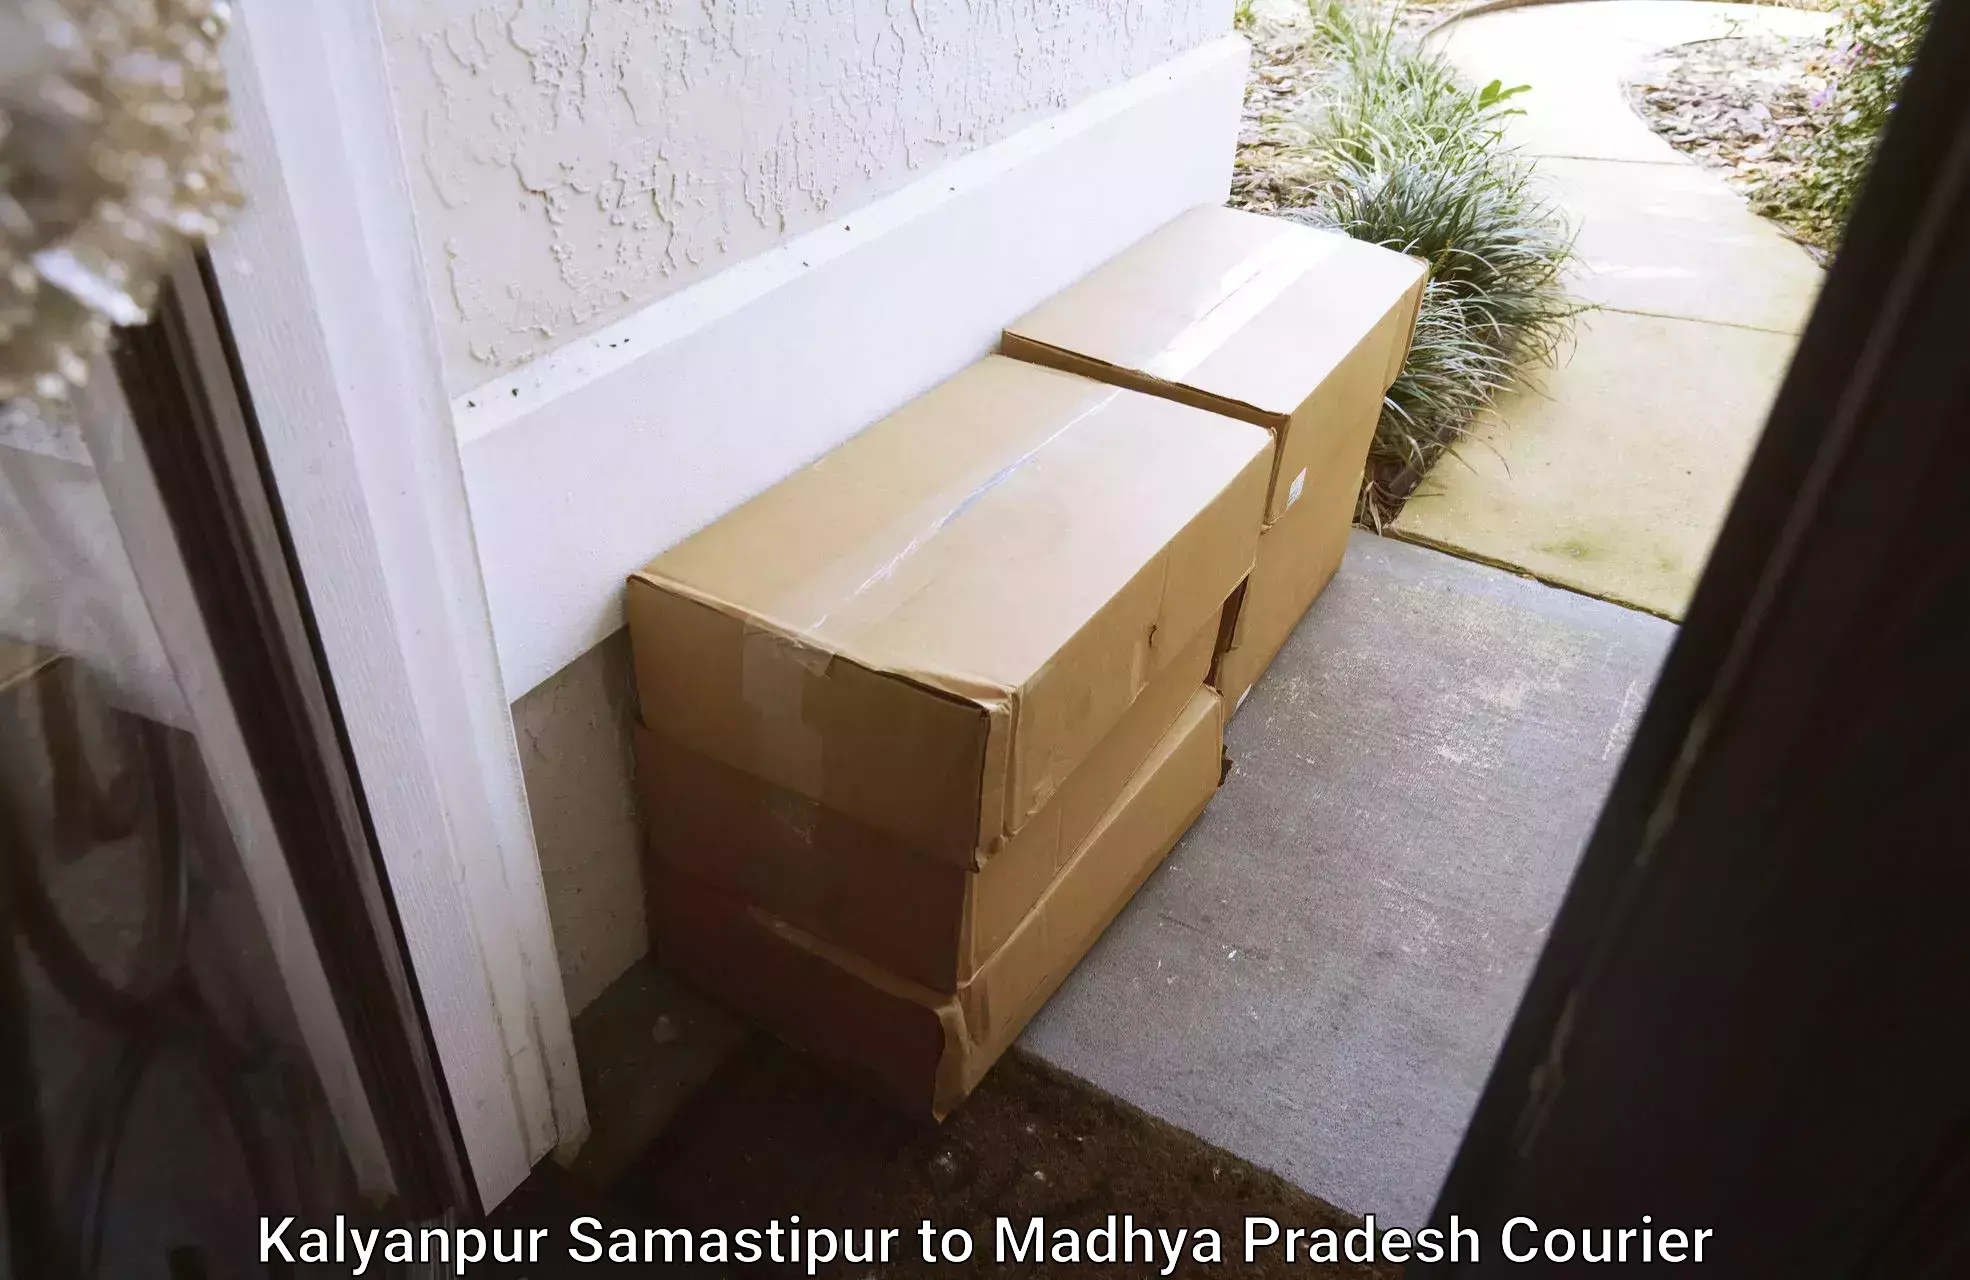 Efficient packing and moving Kalyanpur Samastipur to Barwani